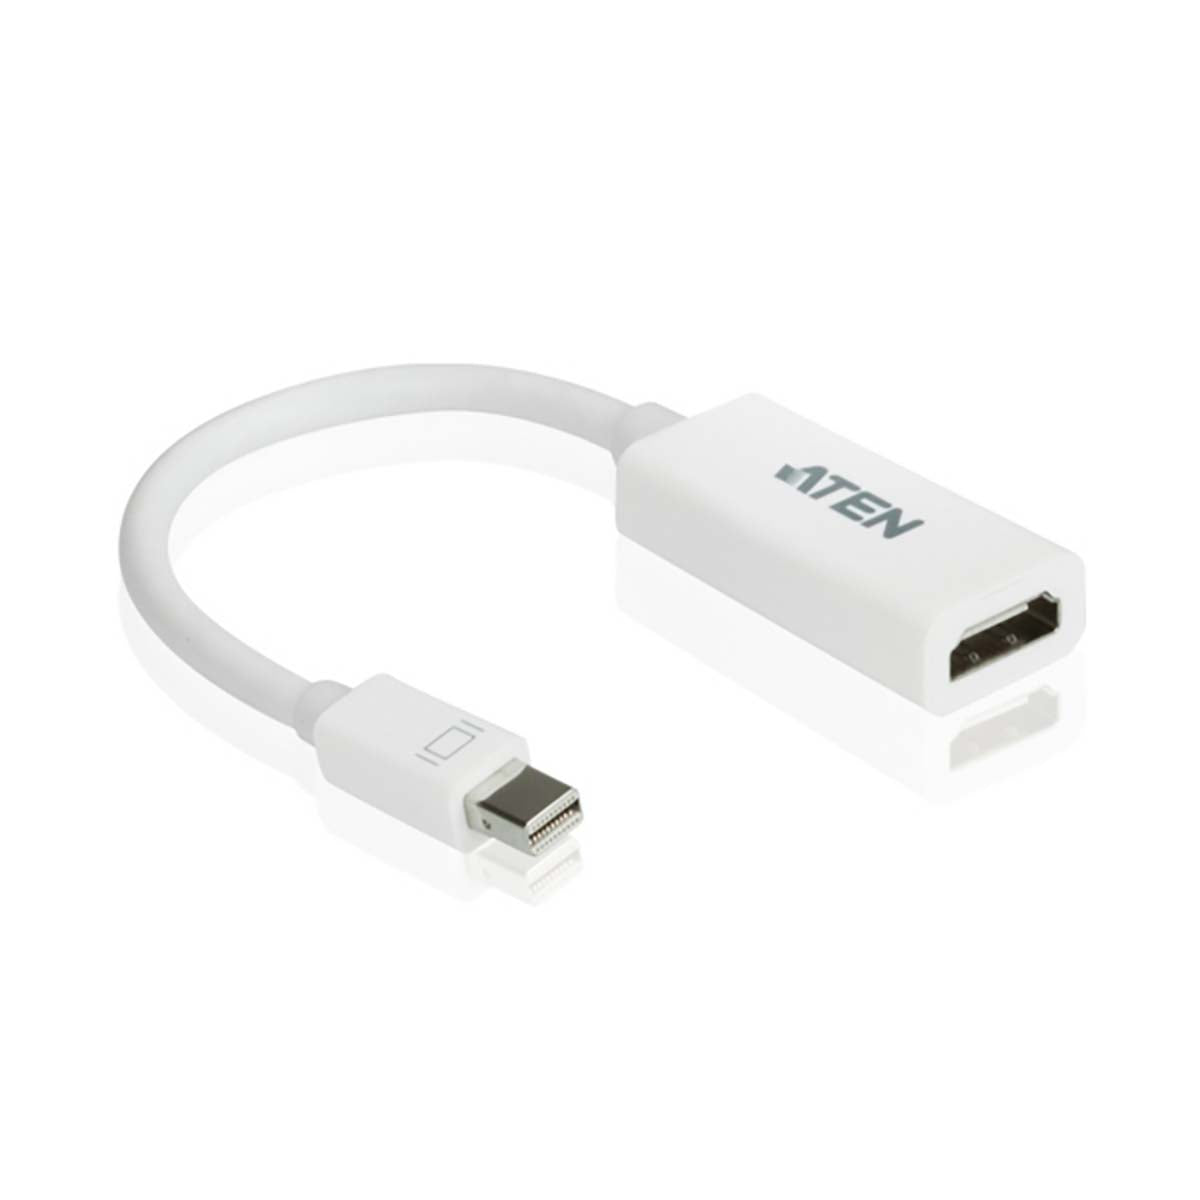 MiniDisplay-Port-HDMI-Adapter